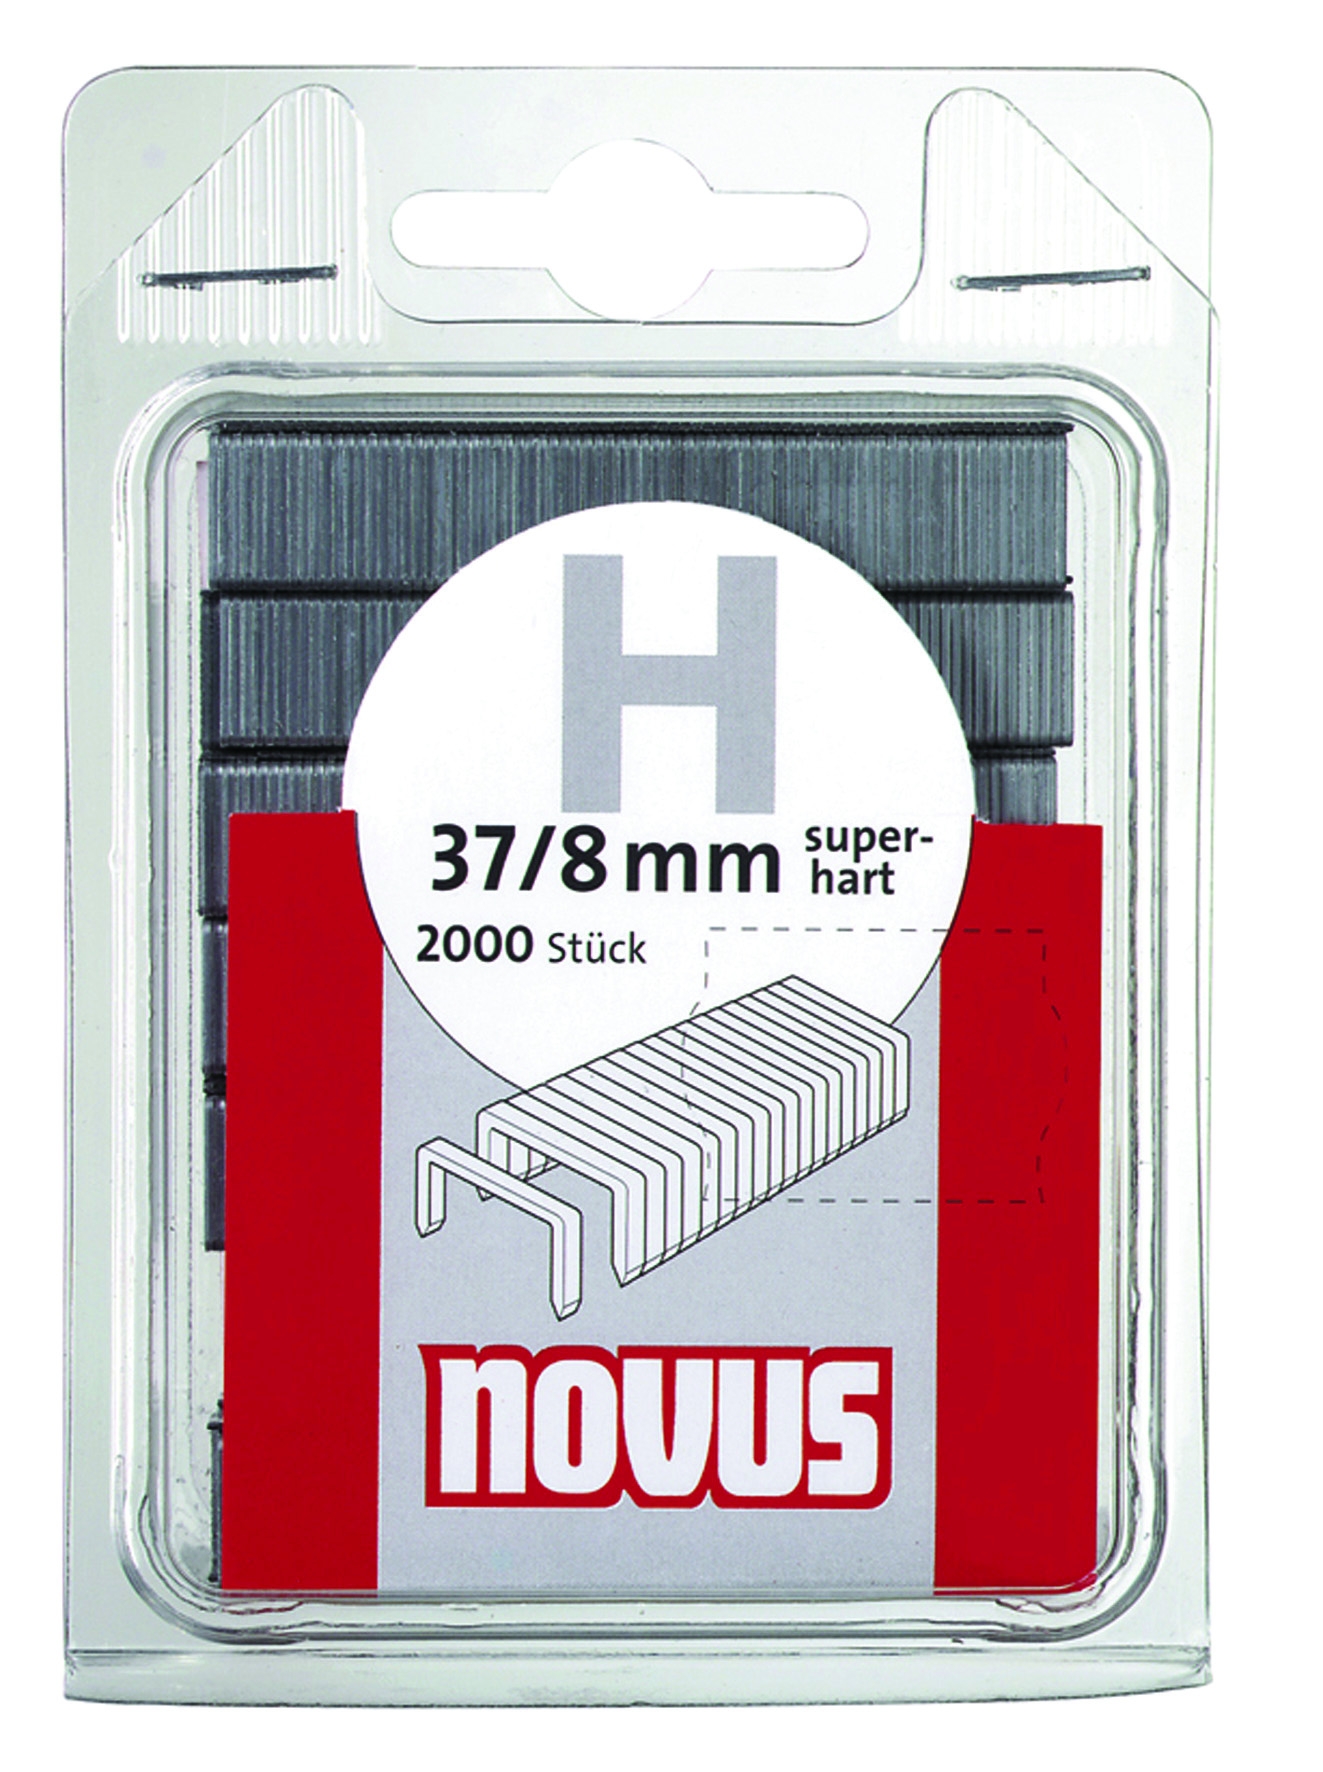 Novus dundraad nieten type H 2000 stuks 6 mm